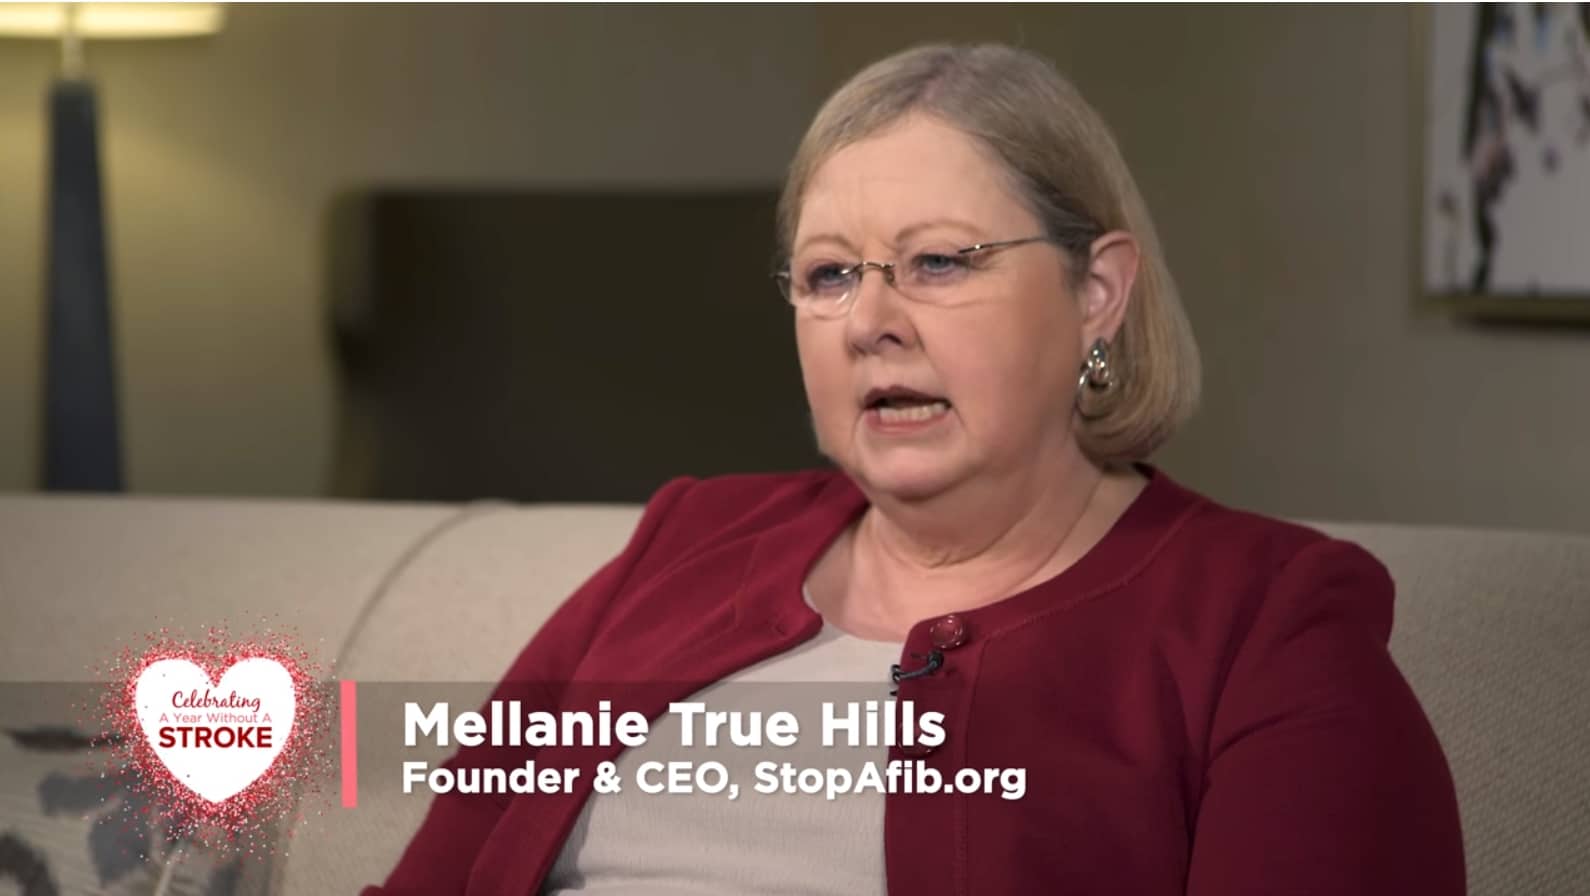 Melanie True Hills speaking.